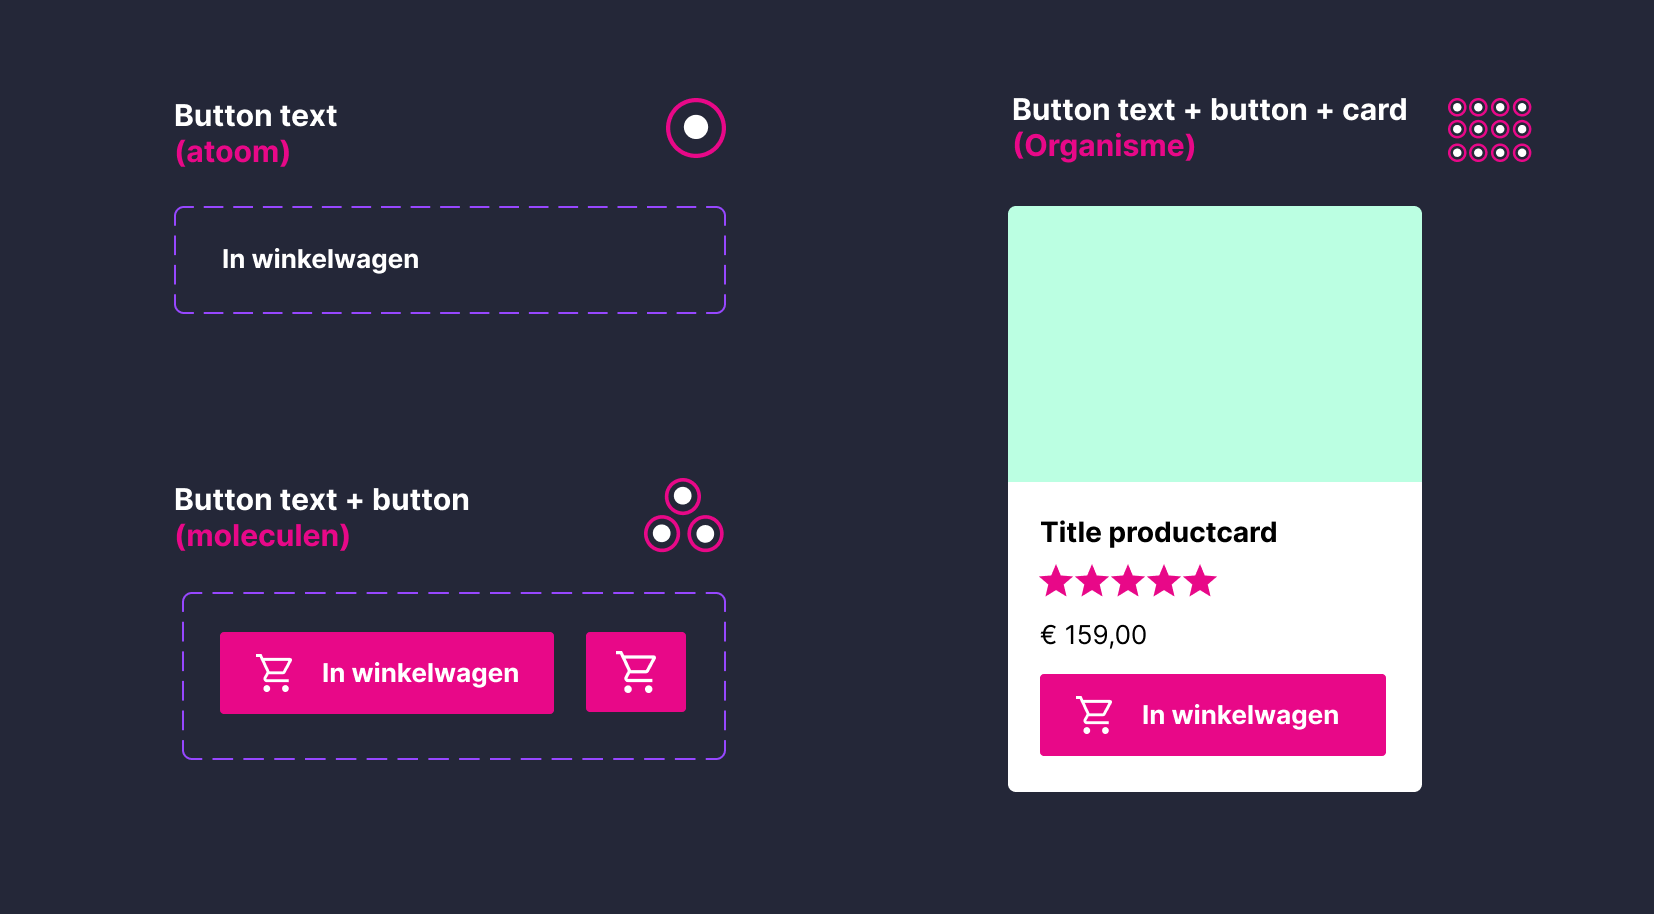 Elementen die voorkomen in een design system. Zoals: button text, button text + button, button text + button + card.